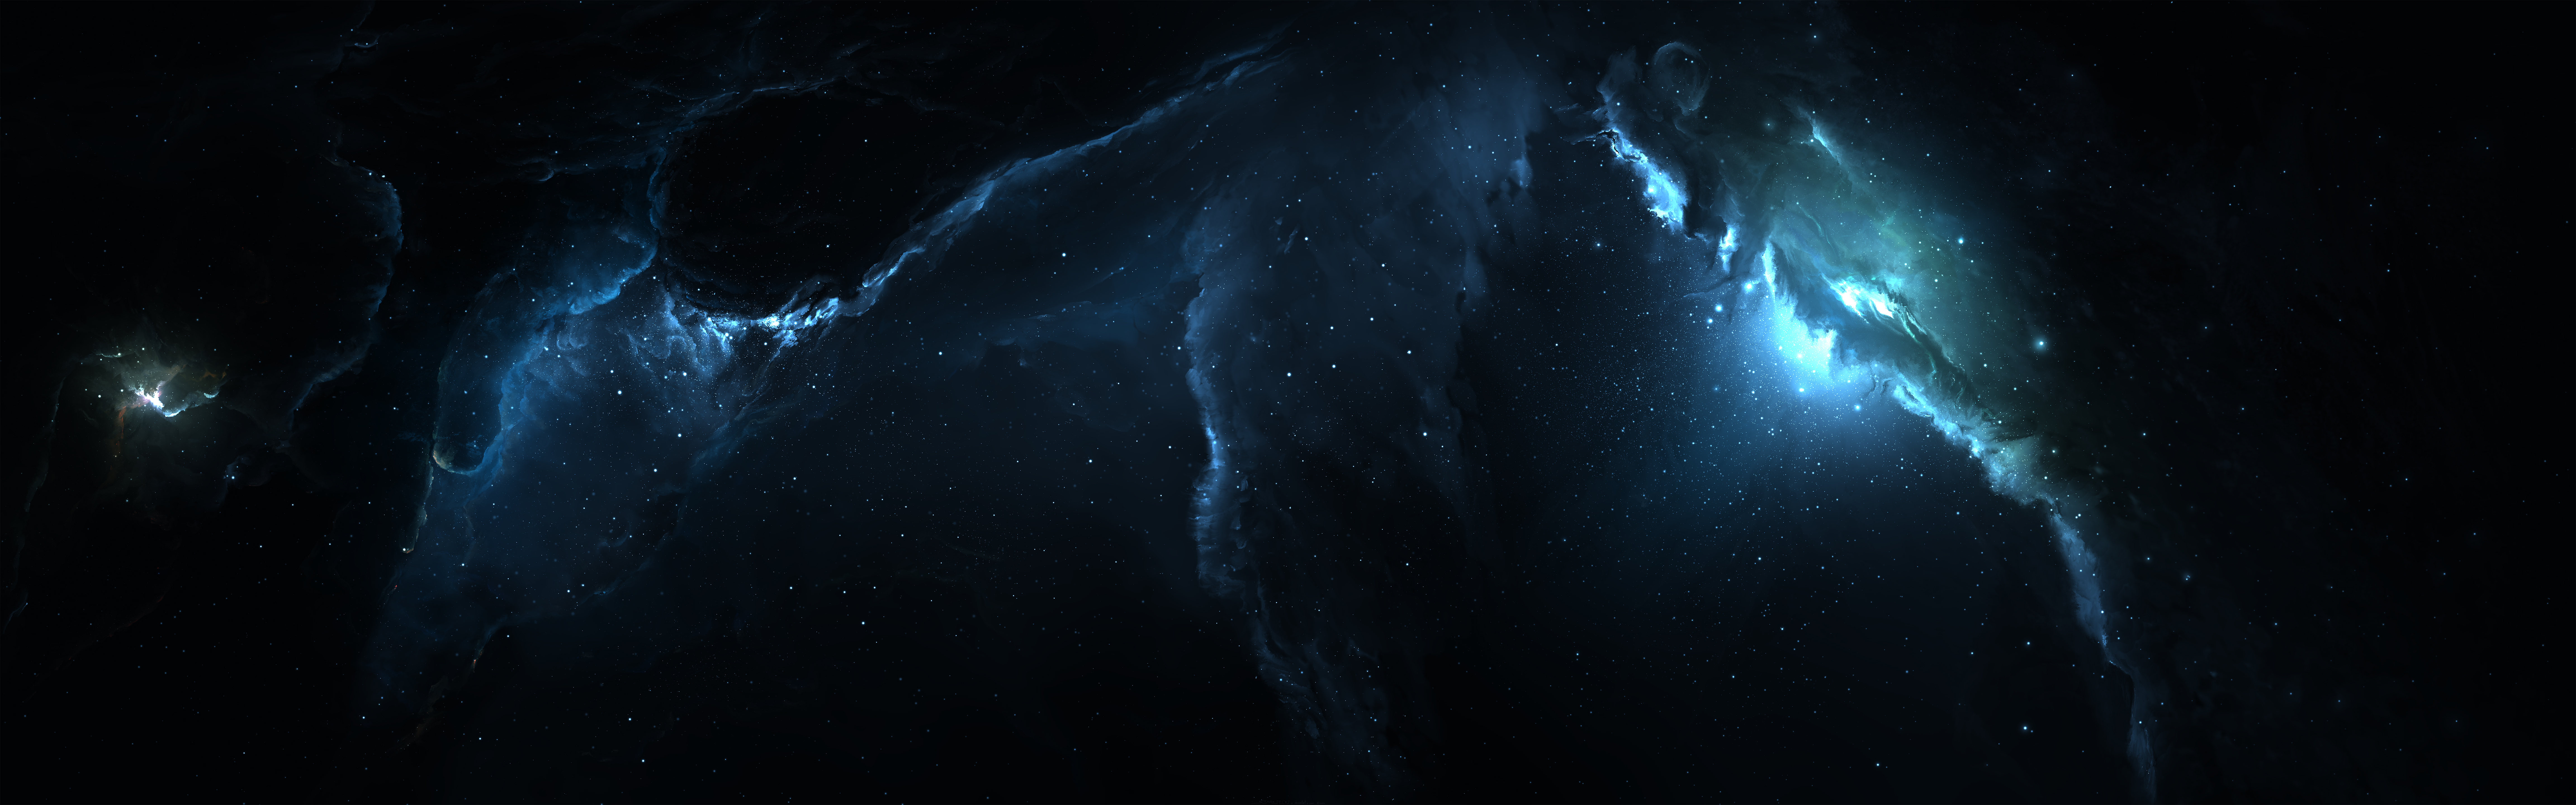 Hãy chiêm ngưỡng vẻ đẹp kì diệu của vũ trụ qua hình ảnh chụp khung cảnh Atlantis Nebula. Tinh túy màu sắc pha trộn một cách lạ thường trong không gian bao la, tạo nên một cảm giác thật bất ngờ và kích thích sự tò mò.